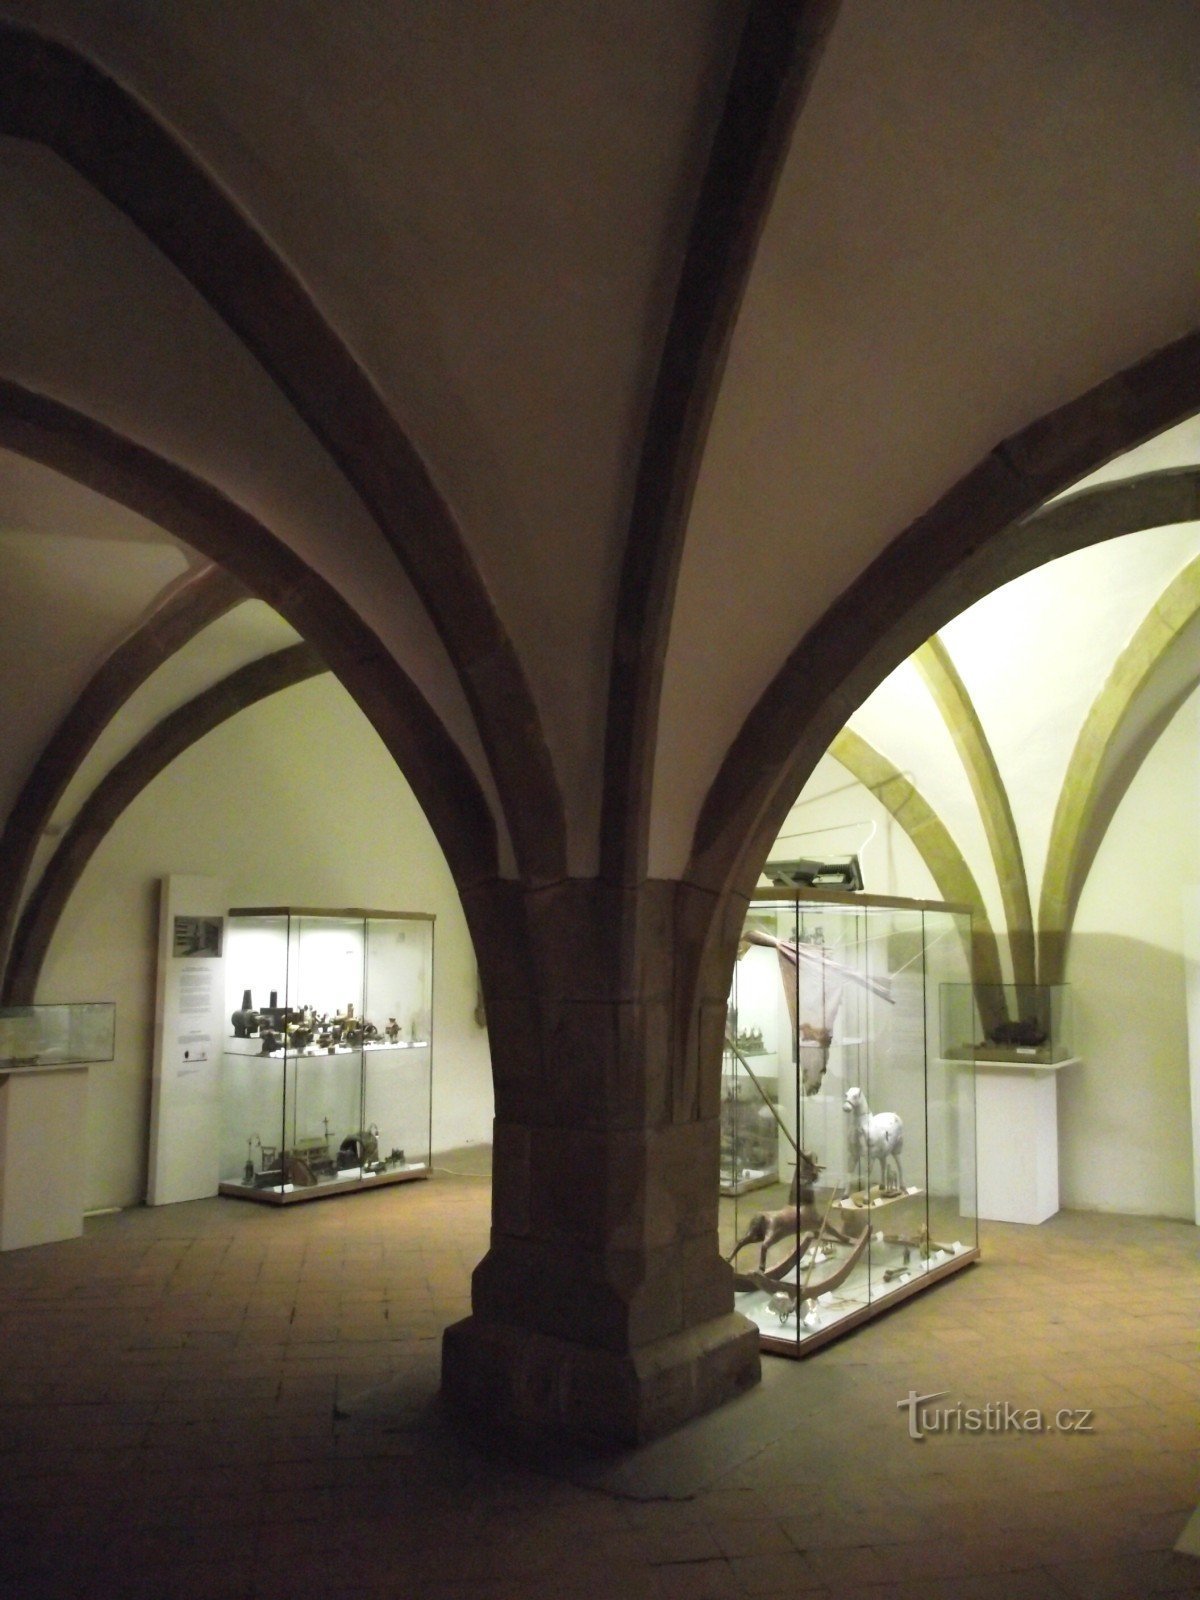 sală mică gotică